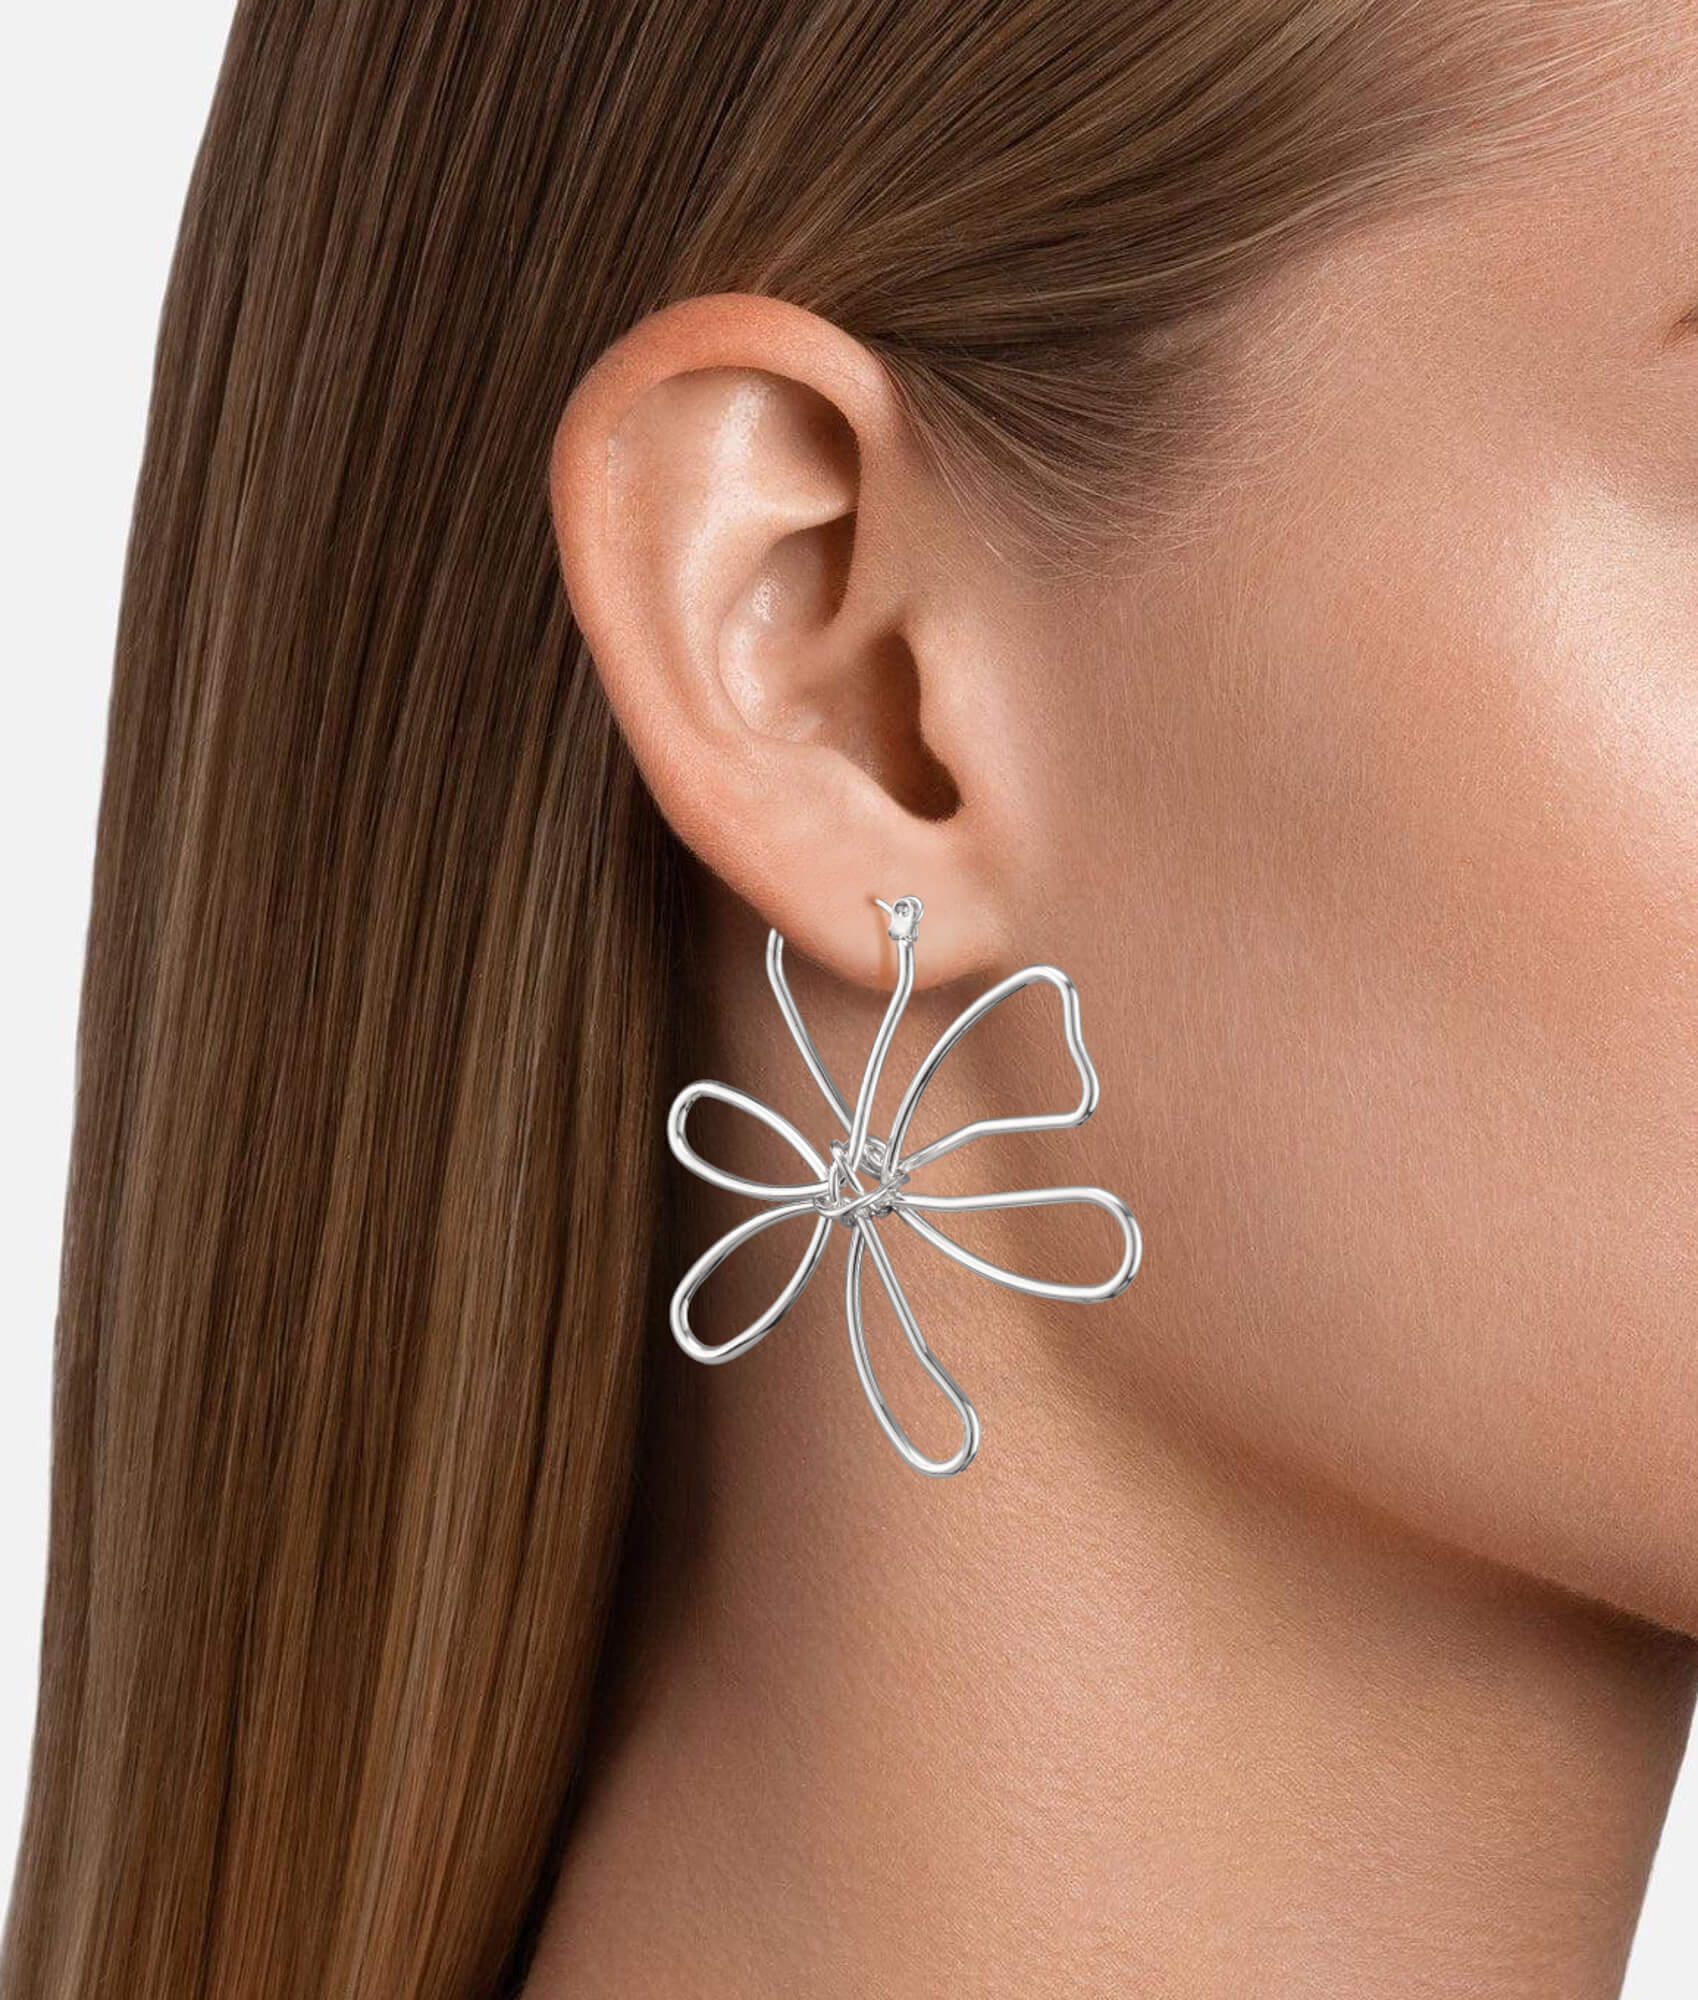 Silver Minimalist Flower Earrings On Women